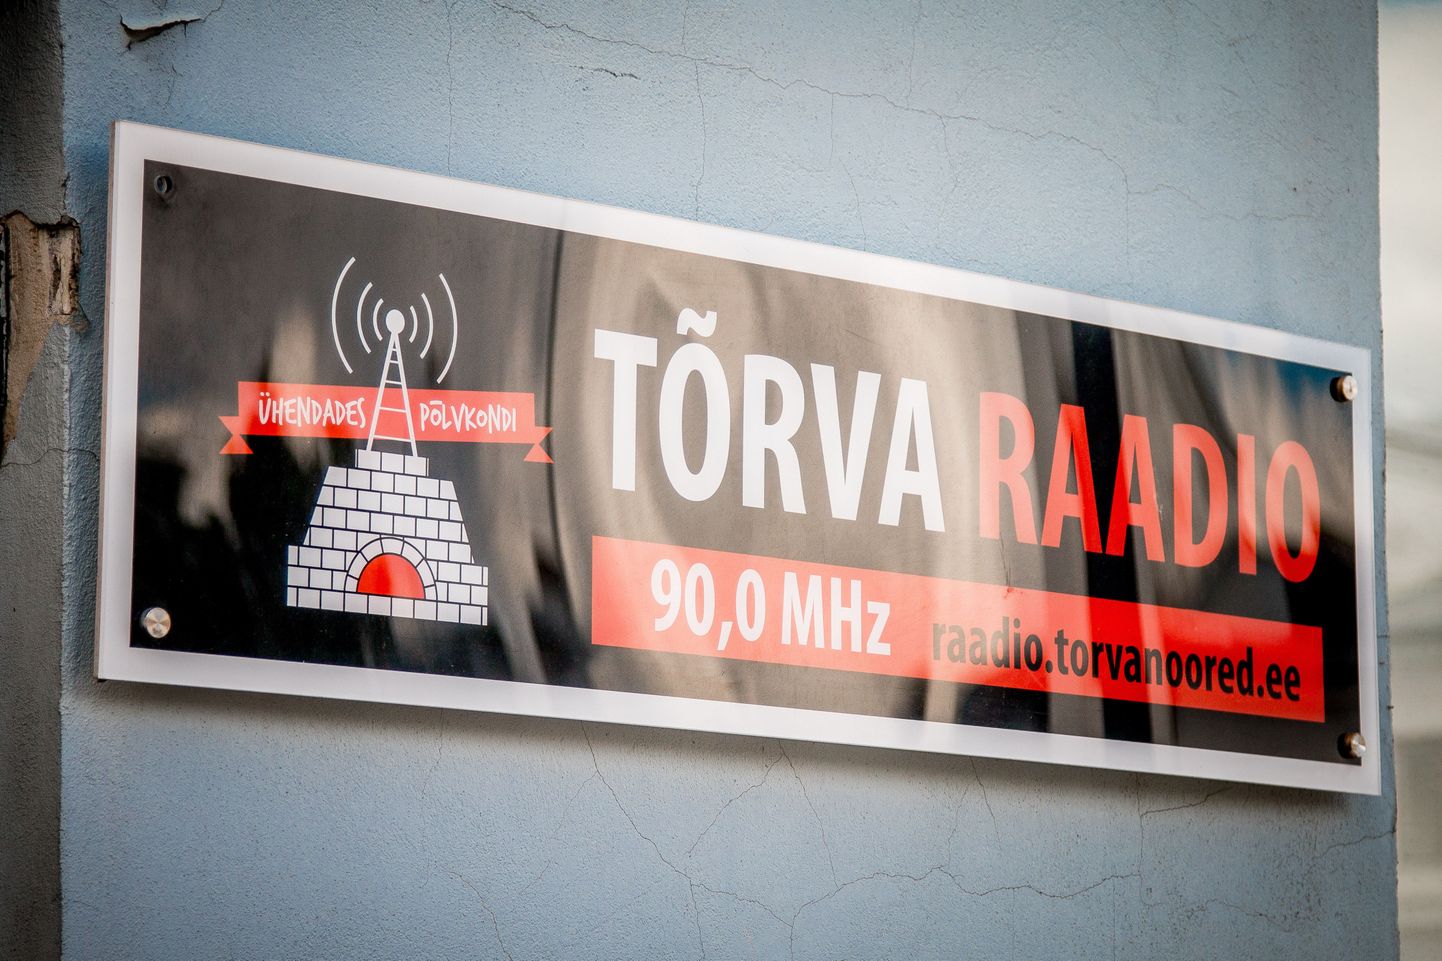 Tõrva raadiot saab kuulata internetis aadressil raadio.torvanoored.ee.